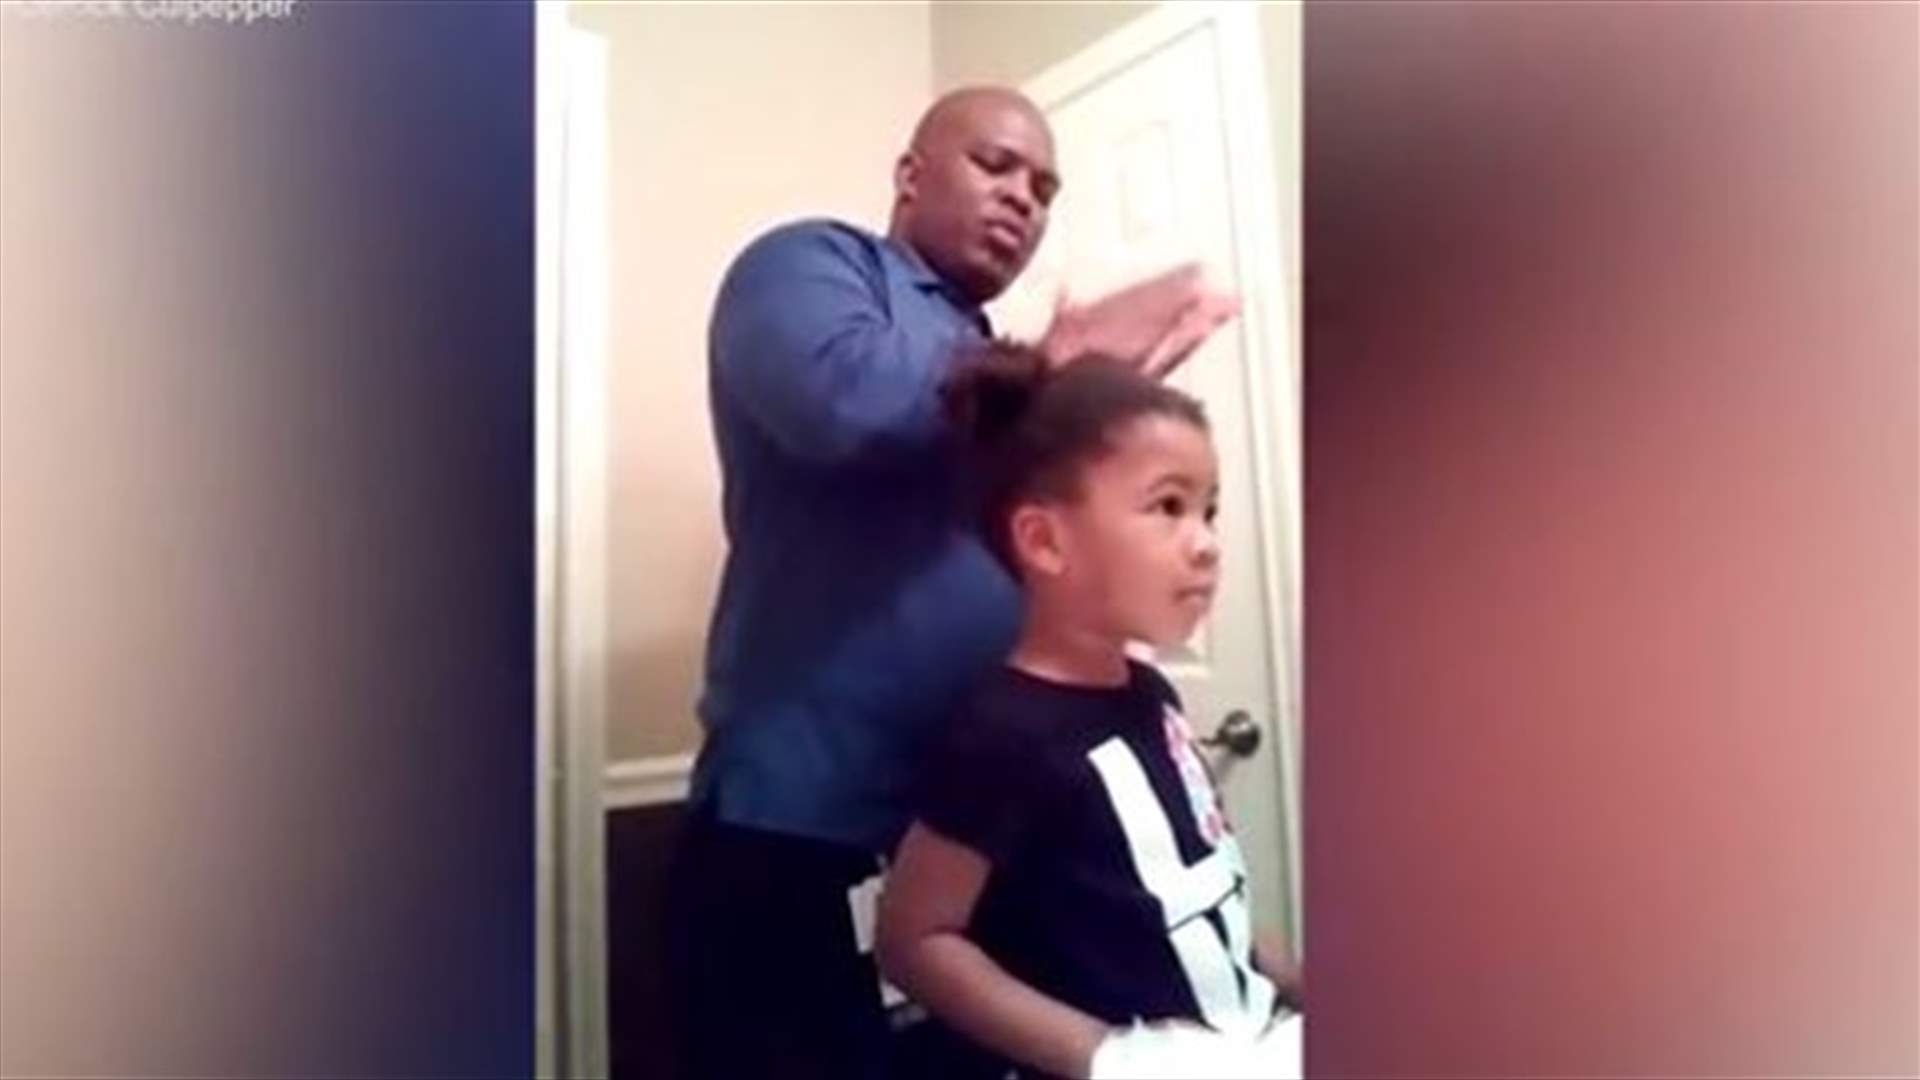 فيديو لأبّ يسرّح شعر ابنته يحظى بـ 900 ألف مشاهدة... فما السبب؟